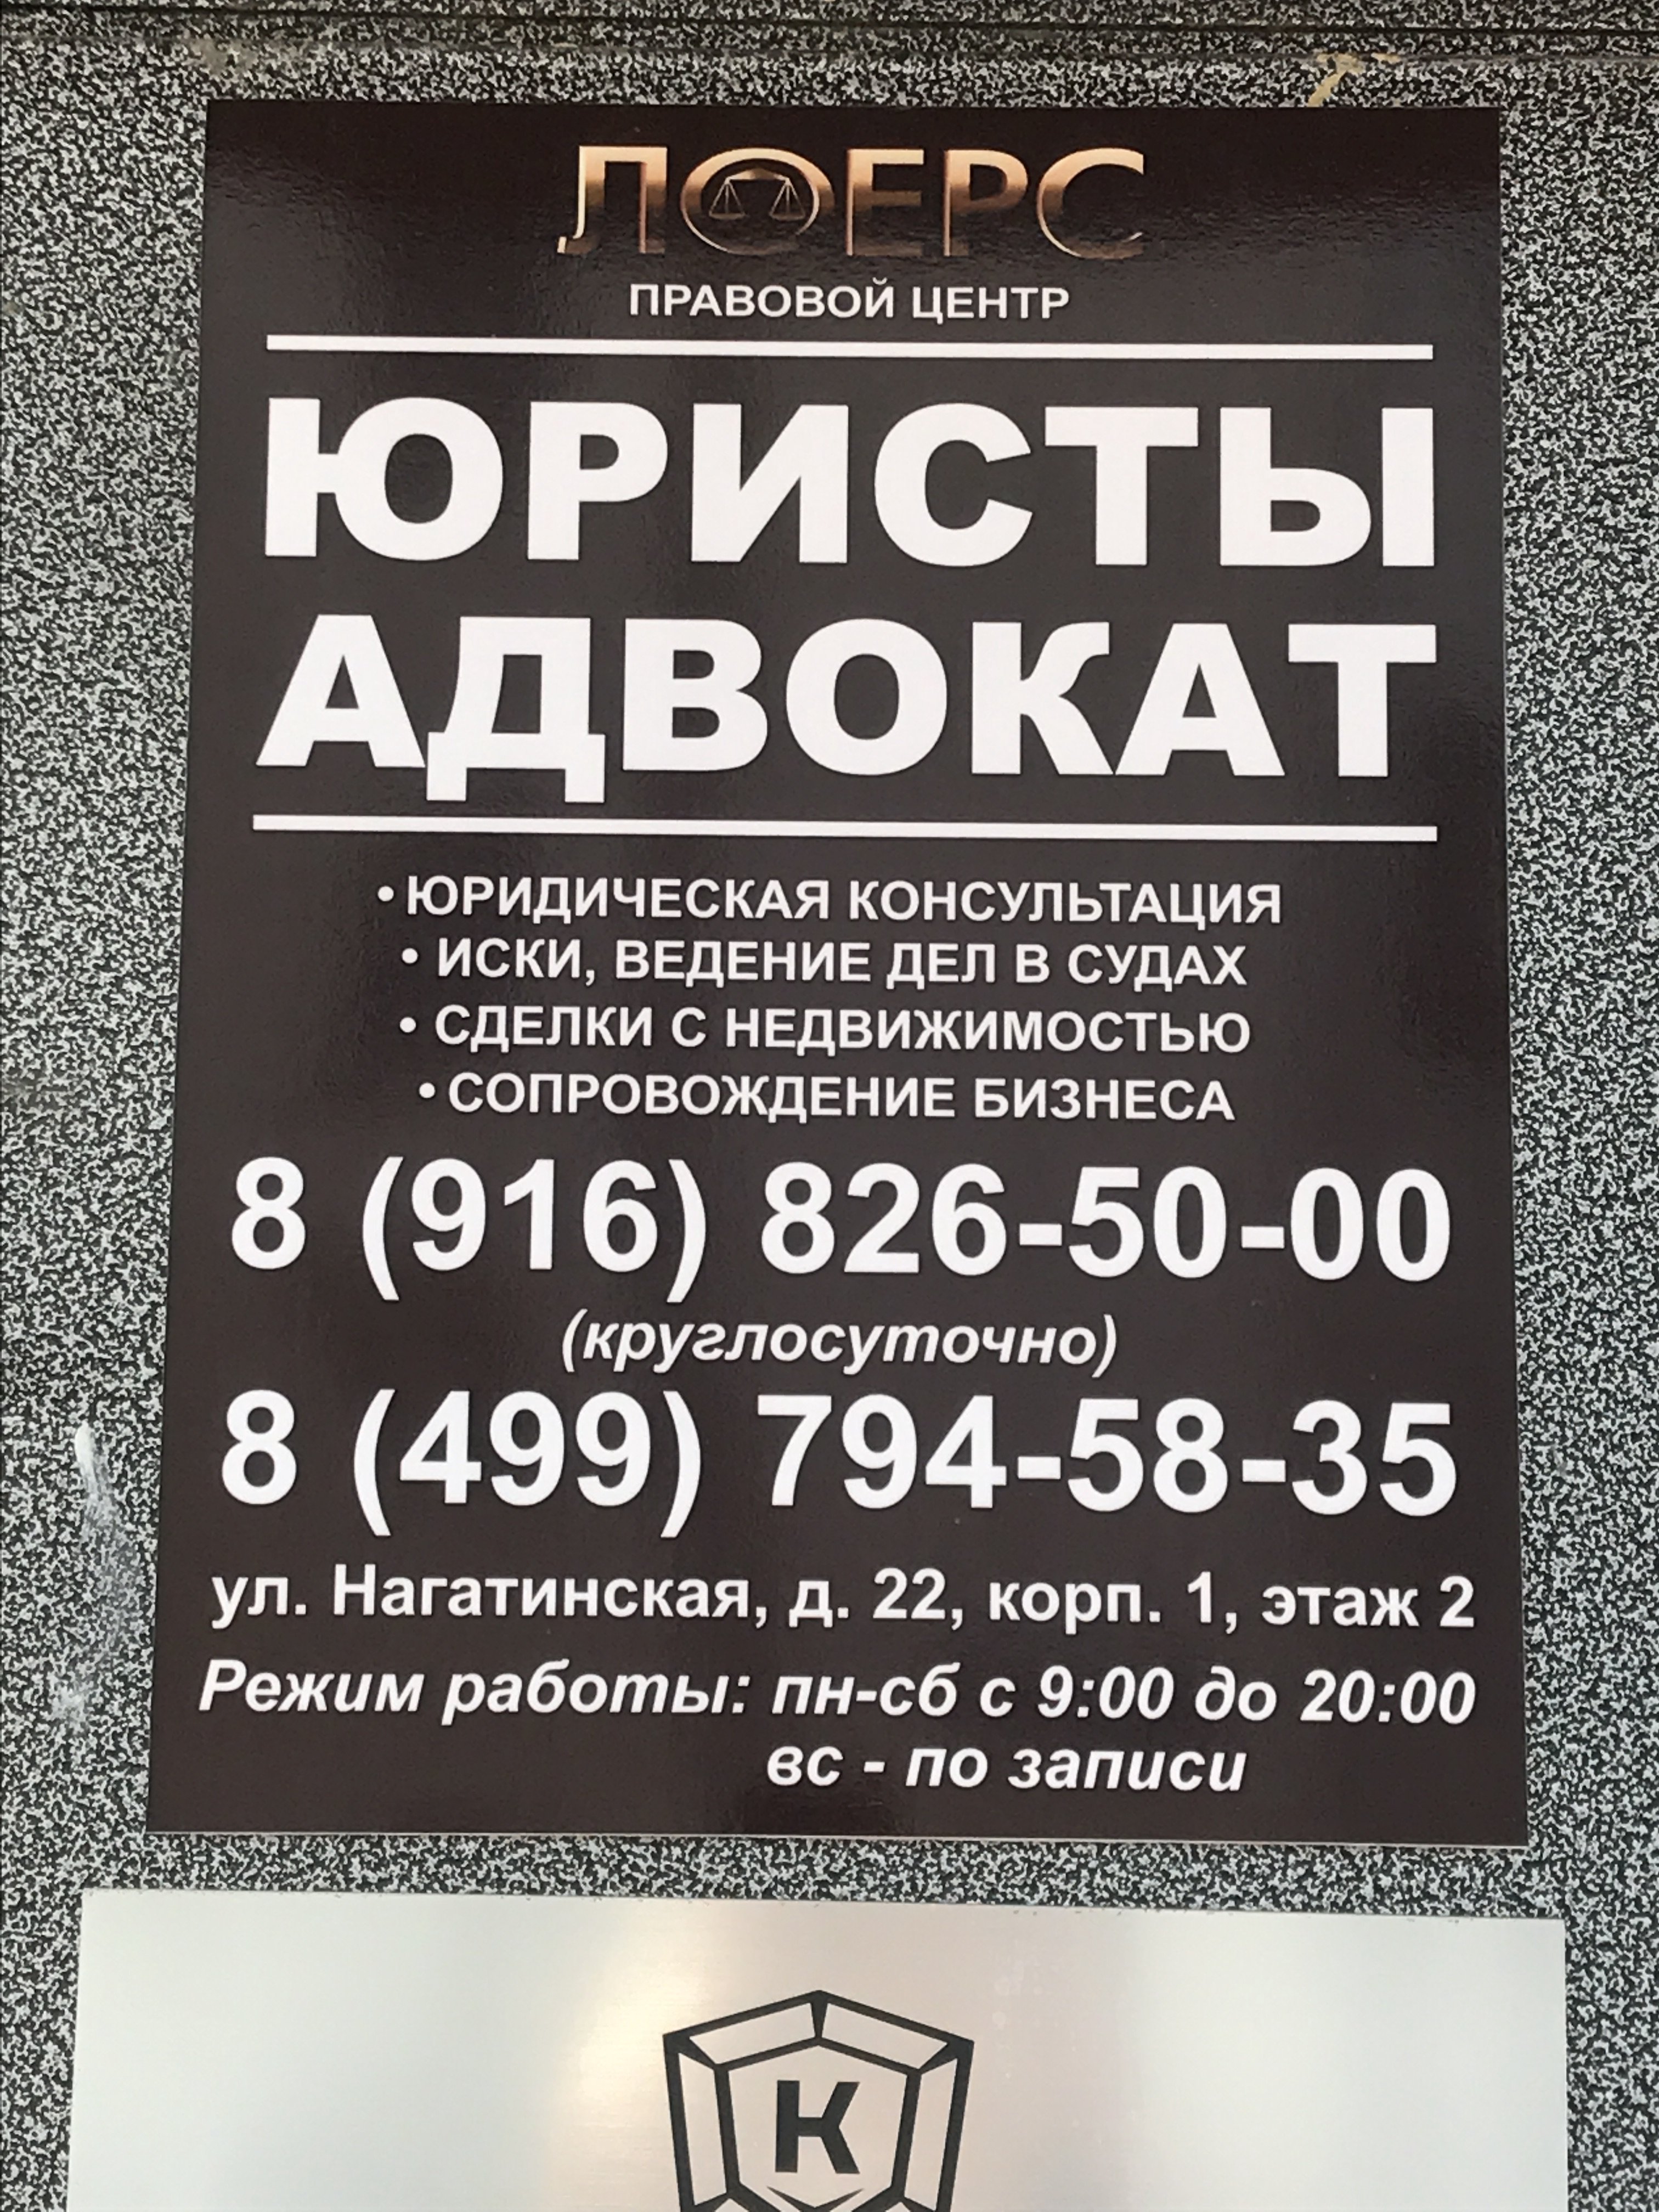 ЗащитаПрав24, юридическая консультация, улица Нагатинская, 22 к1, 7, 8 офис, 2 этаж